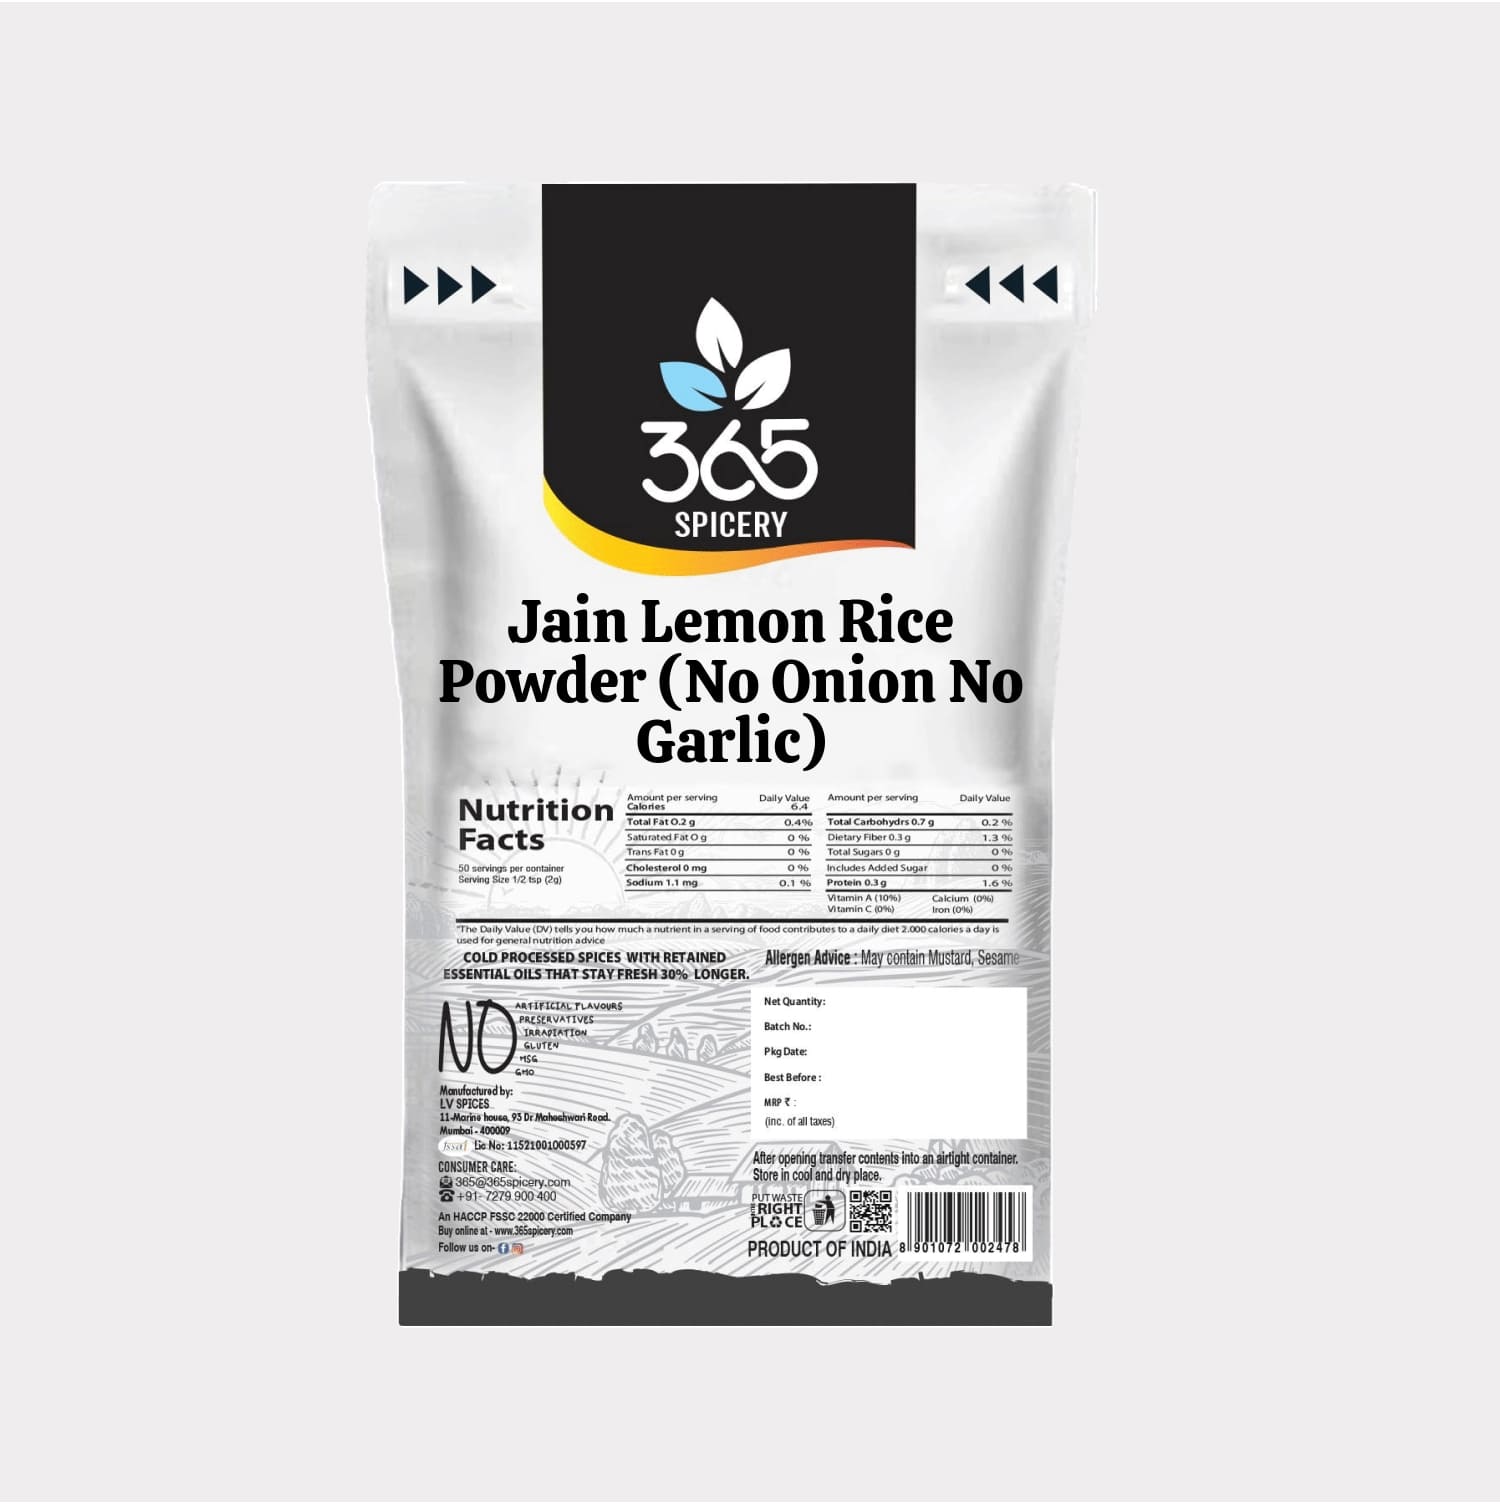 Jain Lemon Rice Powder (No Onion No Garlic)